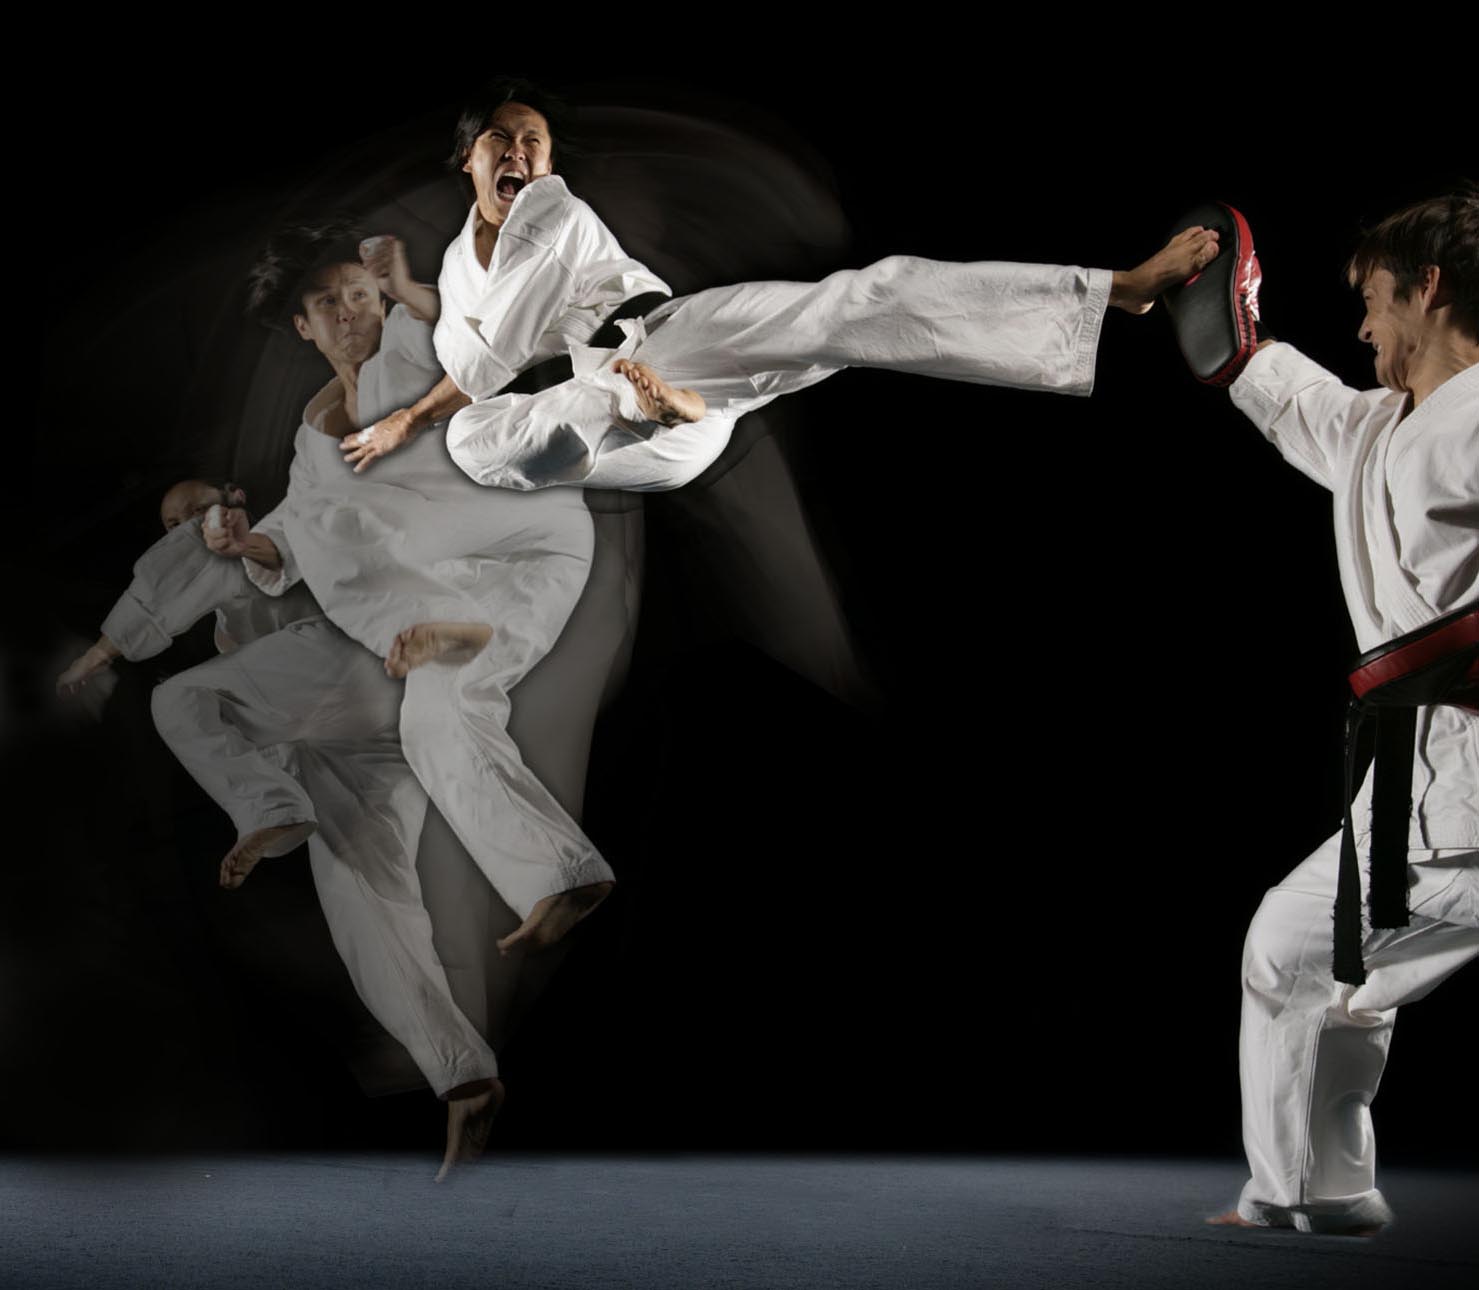 Best Of modern combat martial arts Martial classes arts mma mixed ...